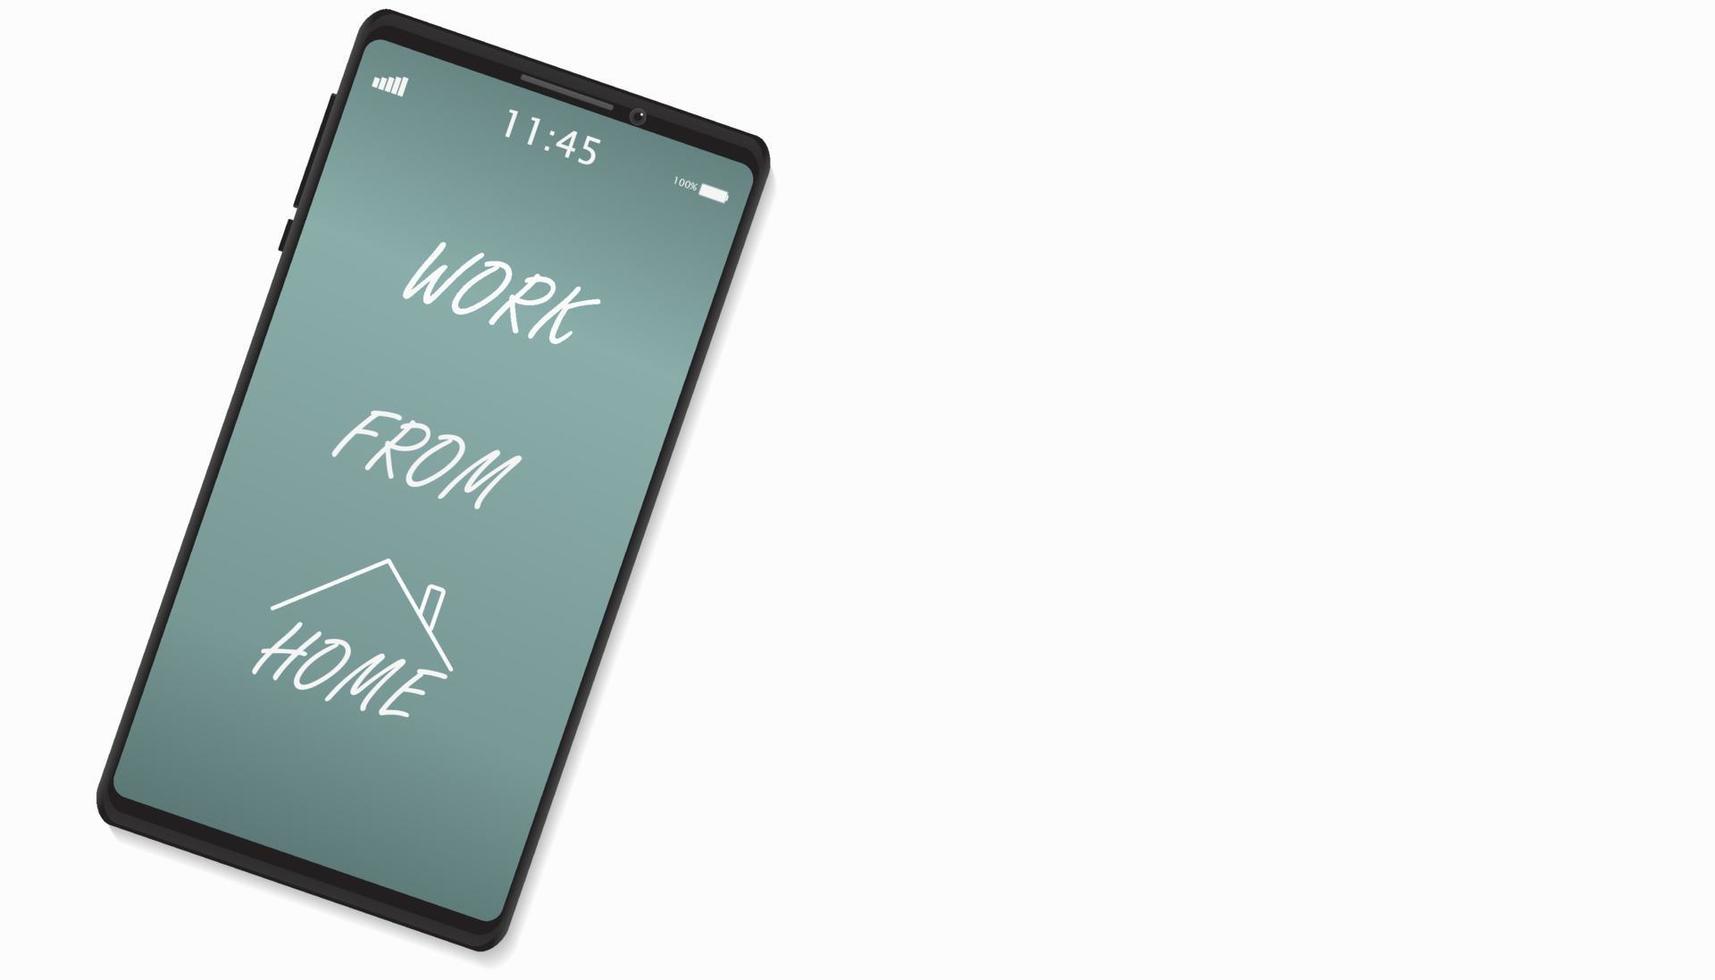 platt minimal smartphone mock up med arbete hemifrån handskriftstext på vit bakgrund, kopieringsutrymme. vektor